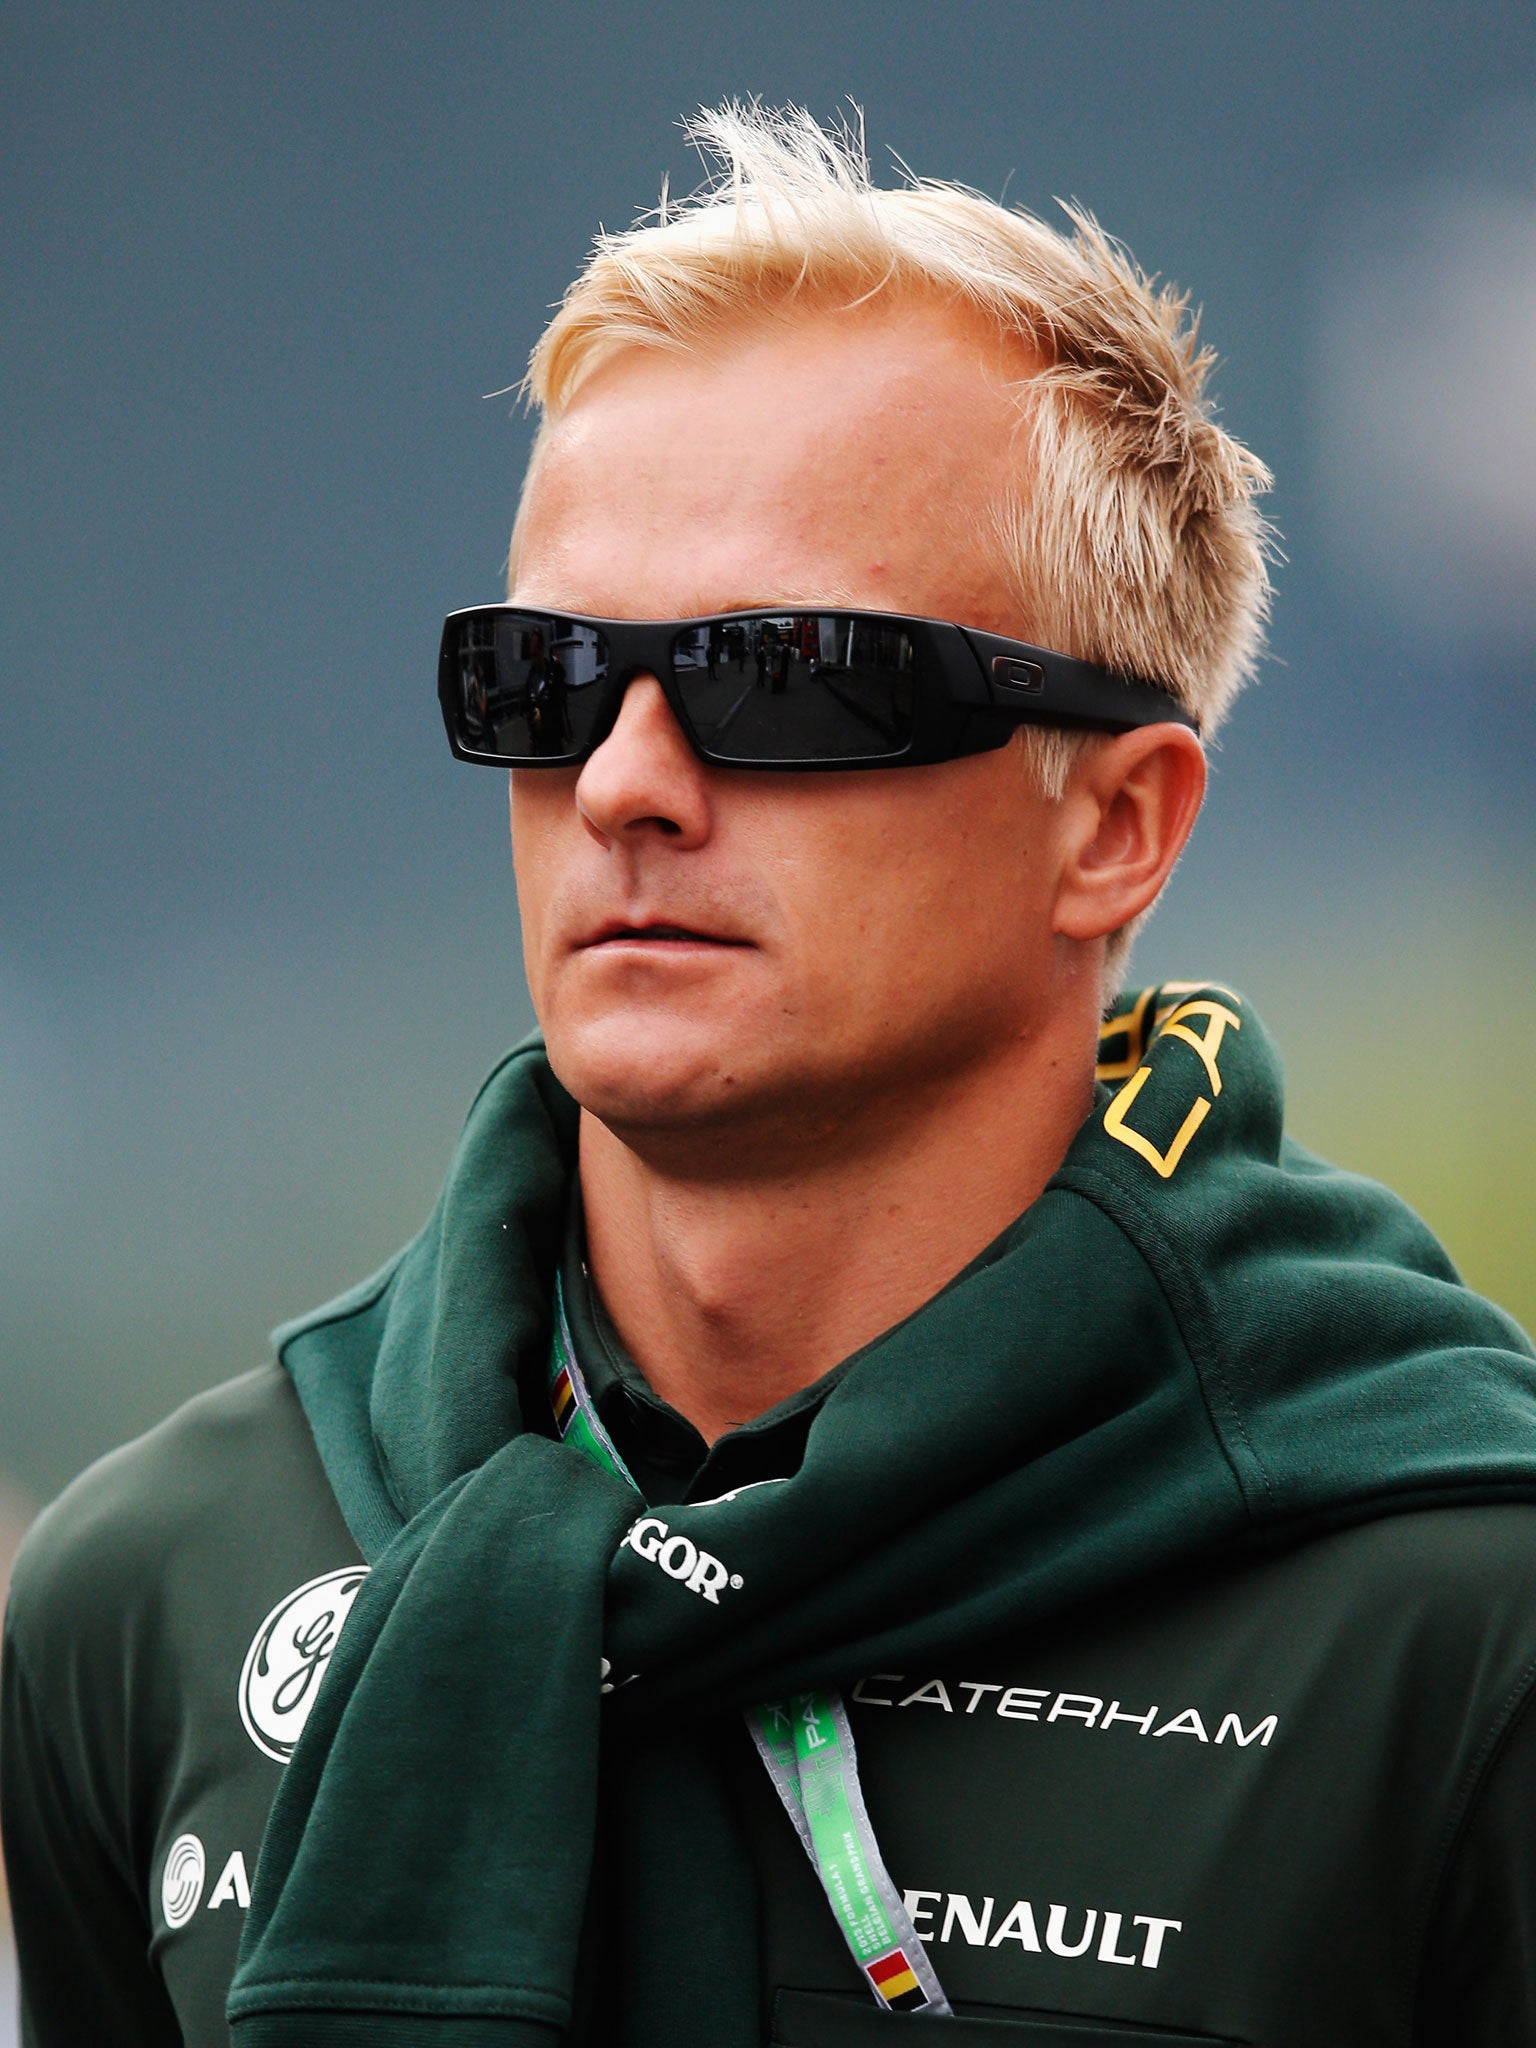 Heikki Kovalainen will replace fellow Finn Kimi Raikkonen who is undergoing back surgery